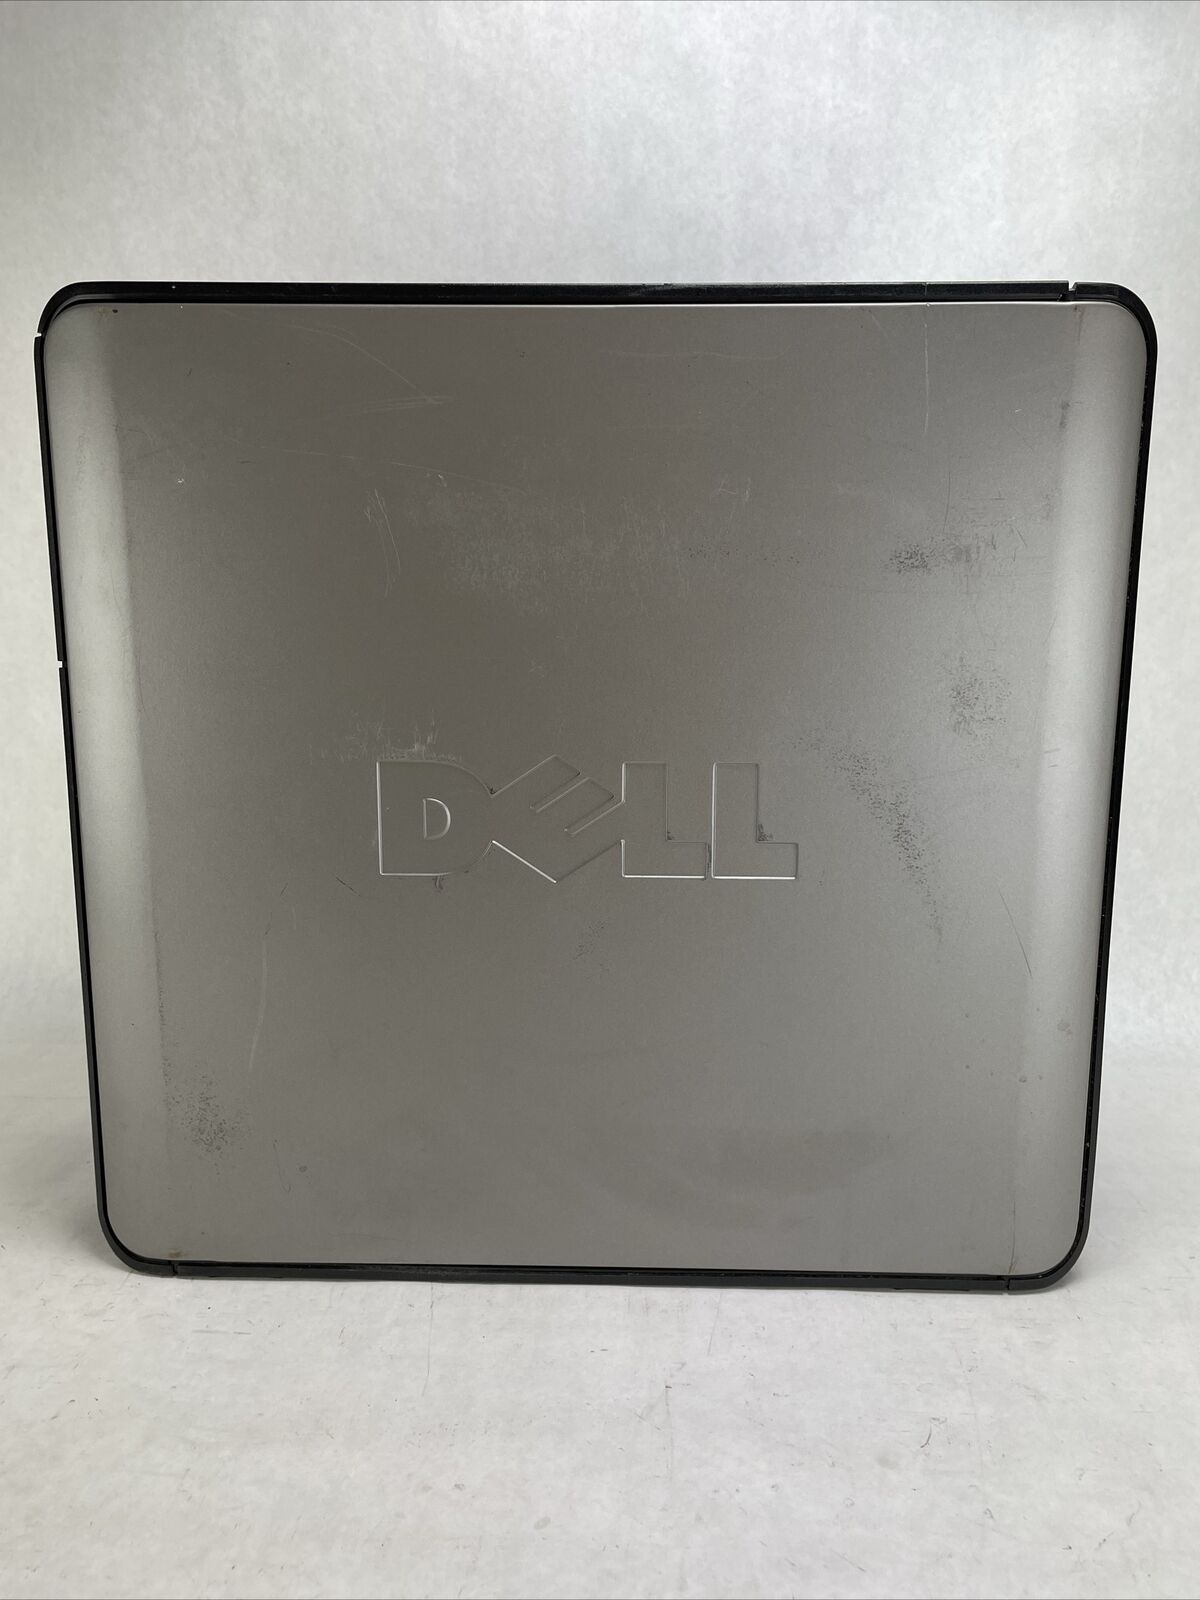 Dell Optiplex 380 MT Intel Core 2 Duo E7500 2.93GHz 2GB RAM No HDD No OS